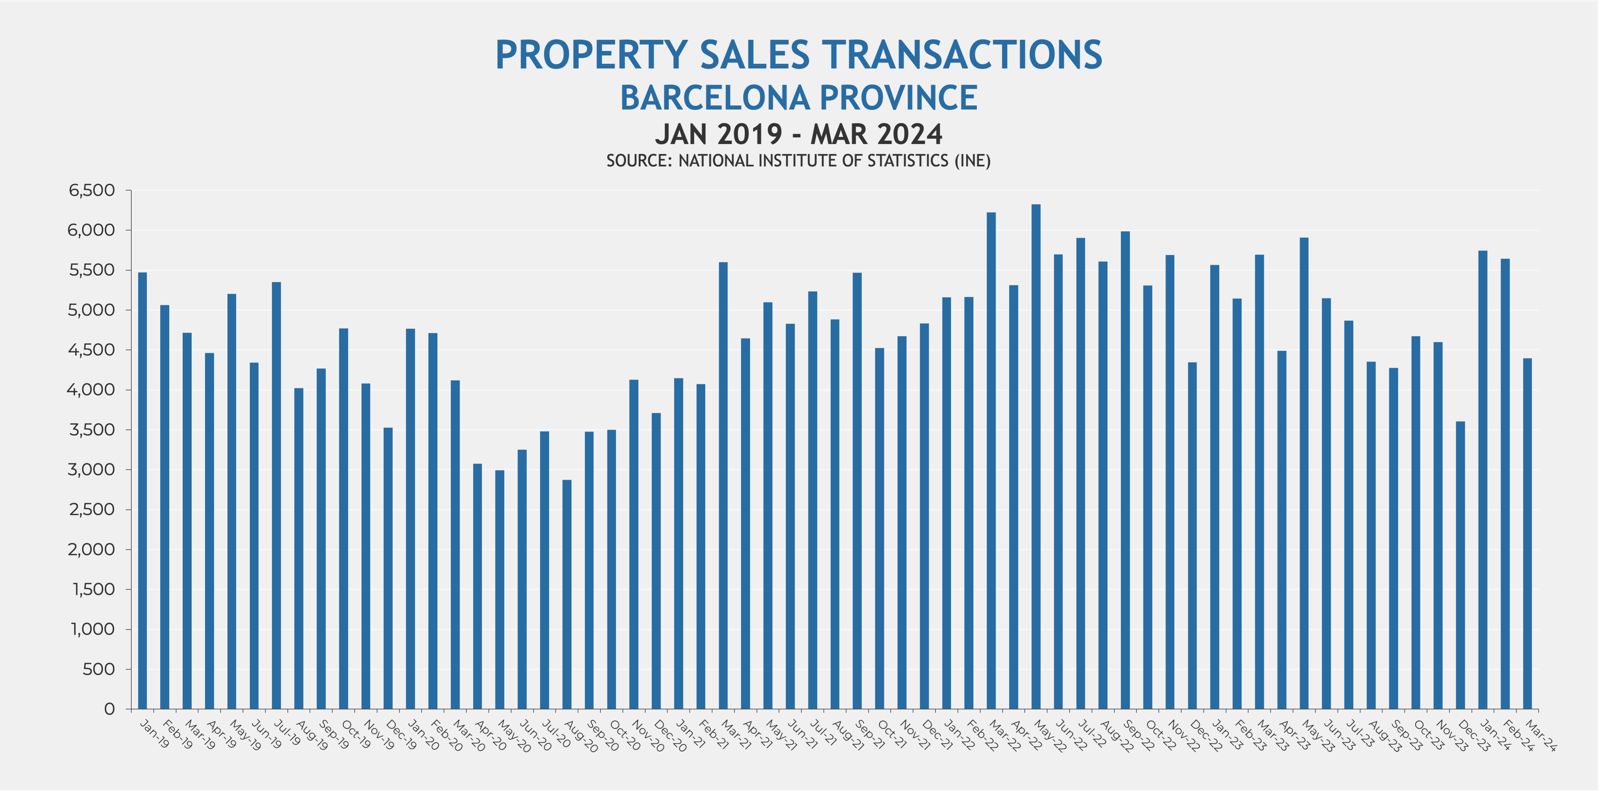 Operaciones de compraventa en Barcelona provincia, enero 2019 - marzo 2014 (Fuente: INE)